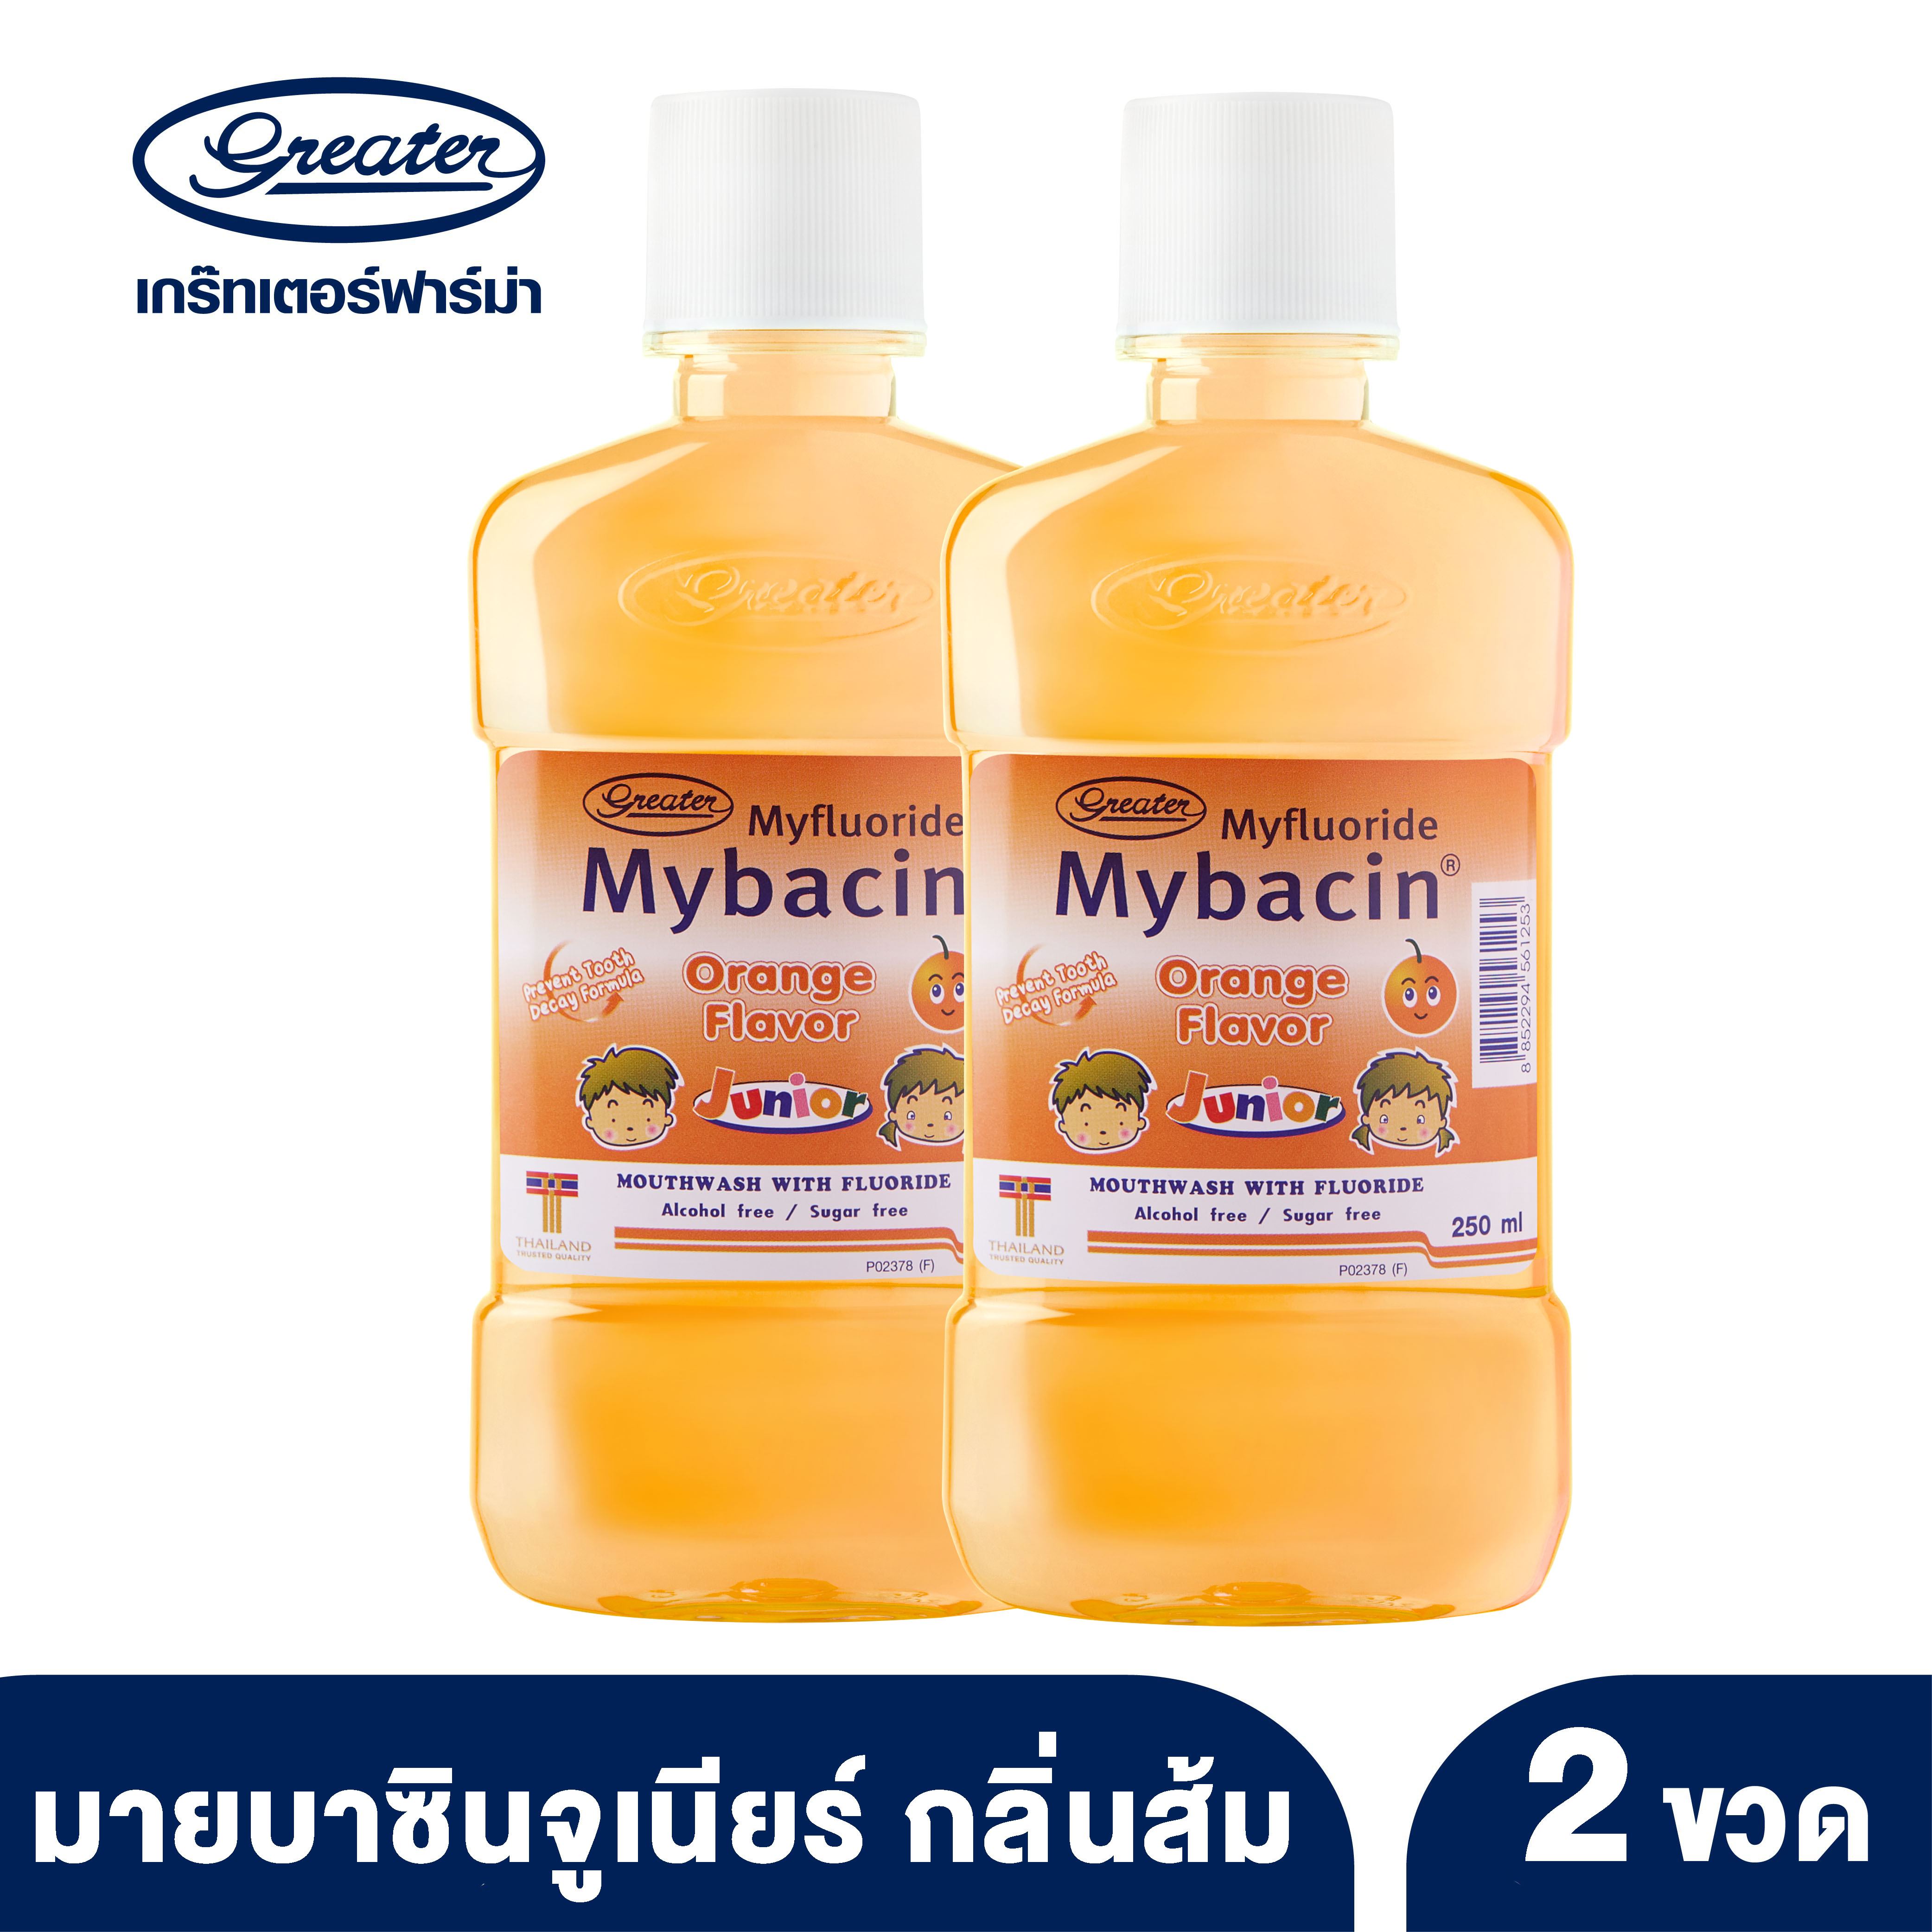 น้ำยาบ้วนปากเด็ก มายบาซิน จูเนียร์ กลิ่นส้ม 250 มล. MyBacin Junior Orange 250ml (แพ็ค 2 ขวด)_Greater เกร๊ทเตอร์ฟาร์ม่า